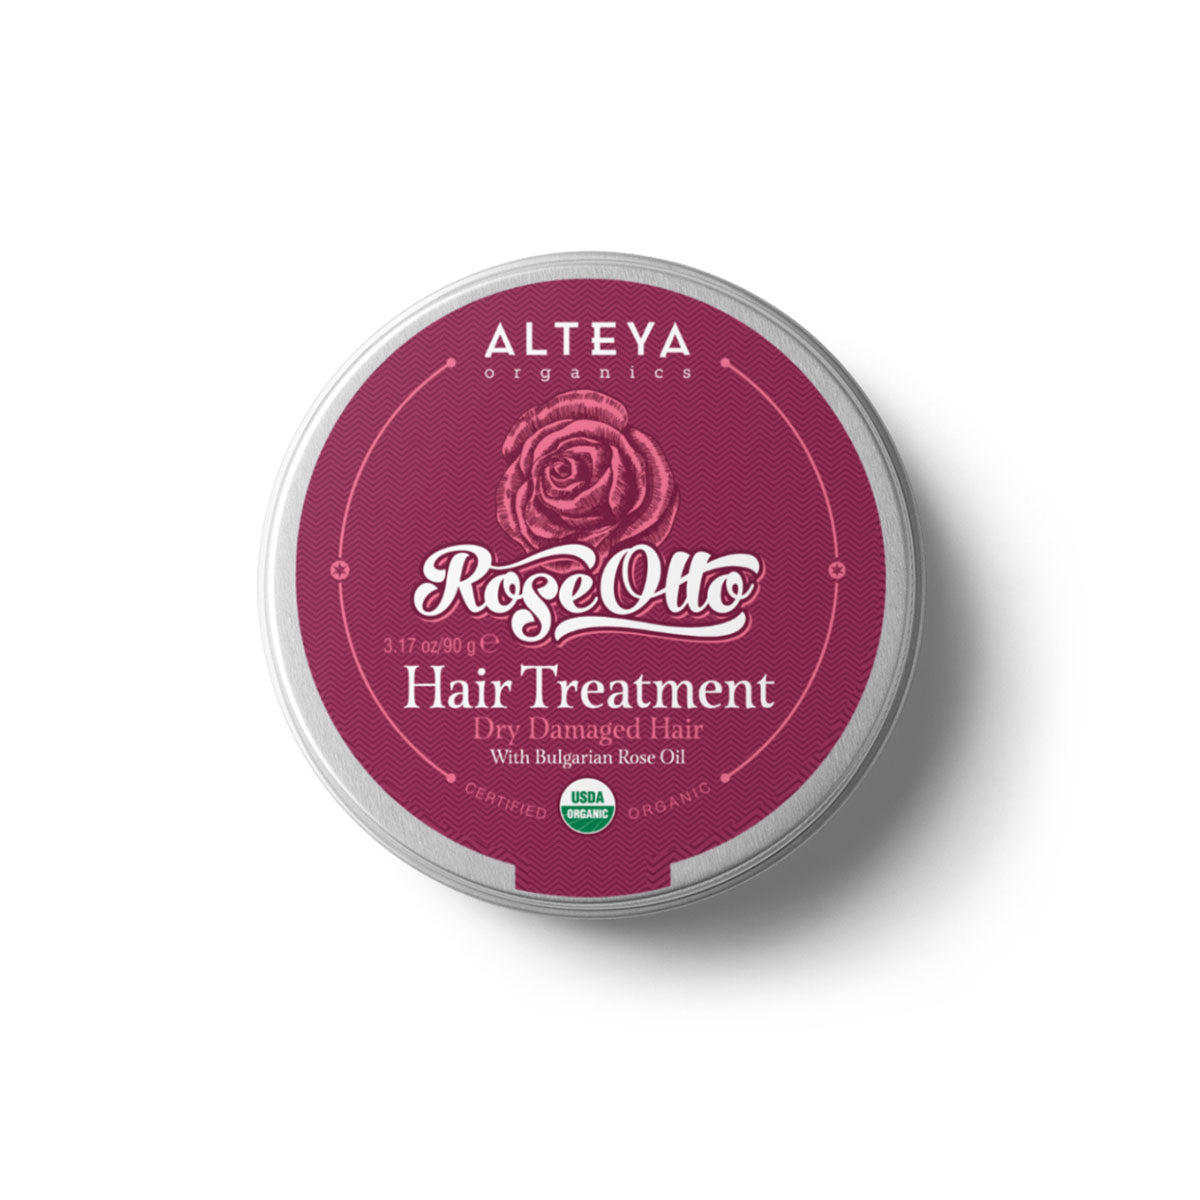 Био Масло за коса Роза е богат и ароматен балм за коса с автентично българско розово масло, който укрепва и съживява сухата, чуплива коса.  Той съдейства за предотвратяване на цъфтежа и заплитането крайчетата на косата, подобрява текстурата, блясъка и структурата на косъма.